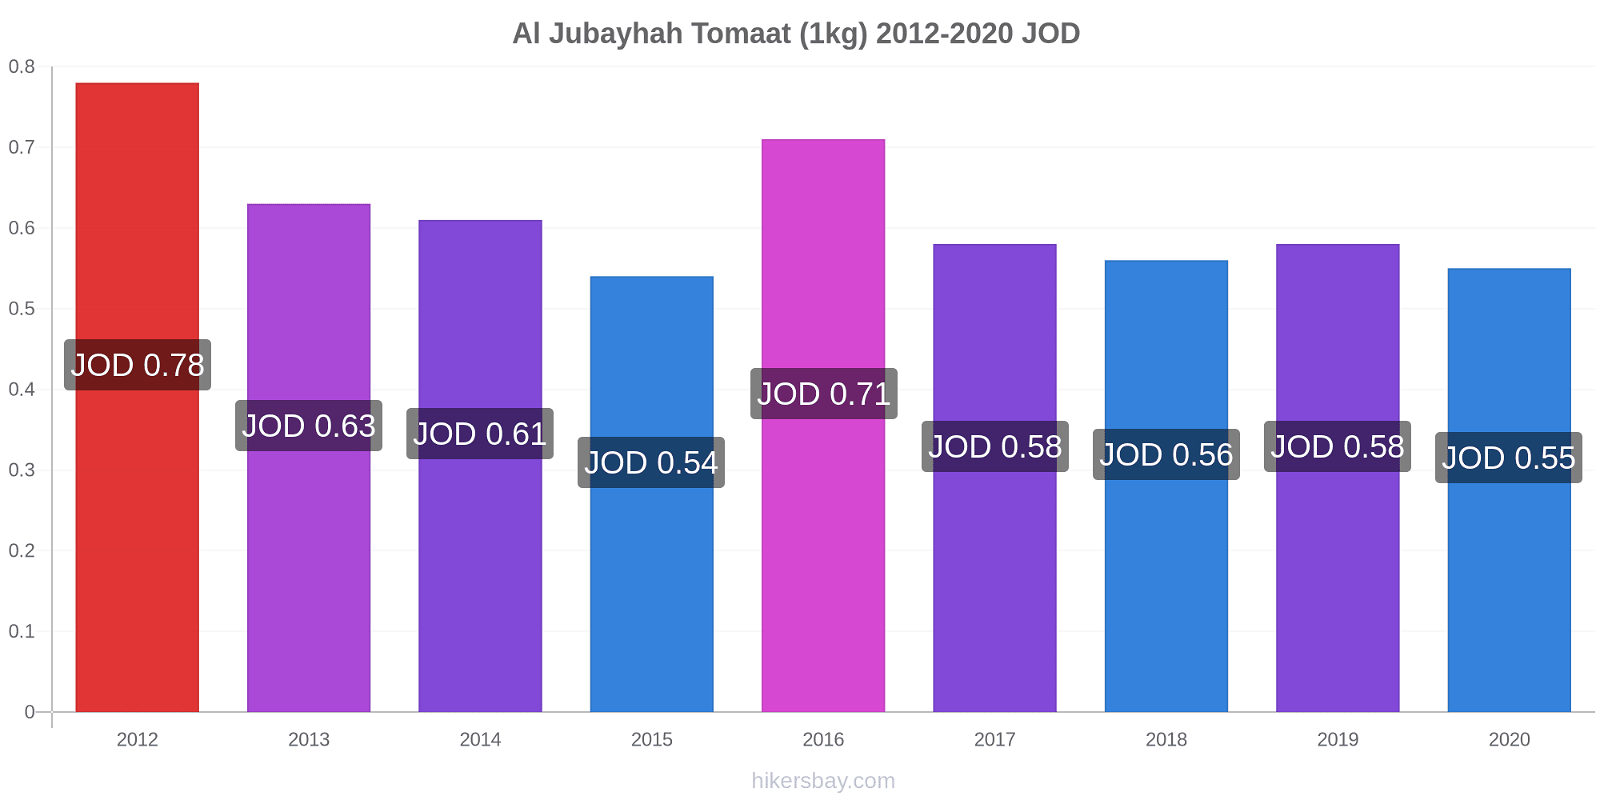 Al Jubayhah prijswijzigingen Tomaat (1kg) hikersbay.com